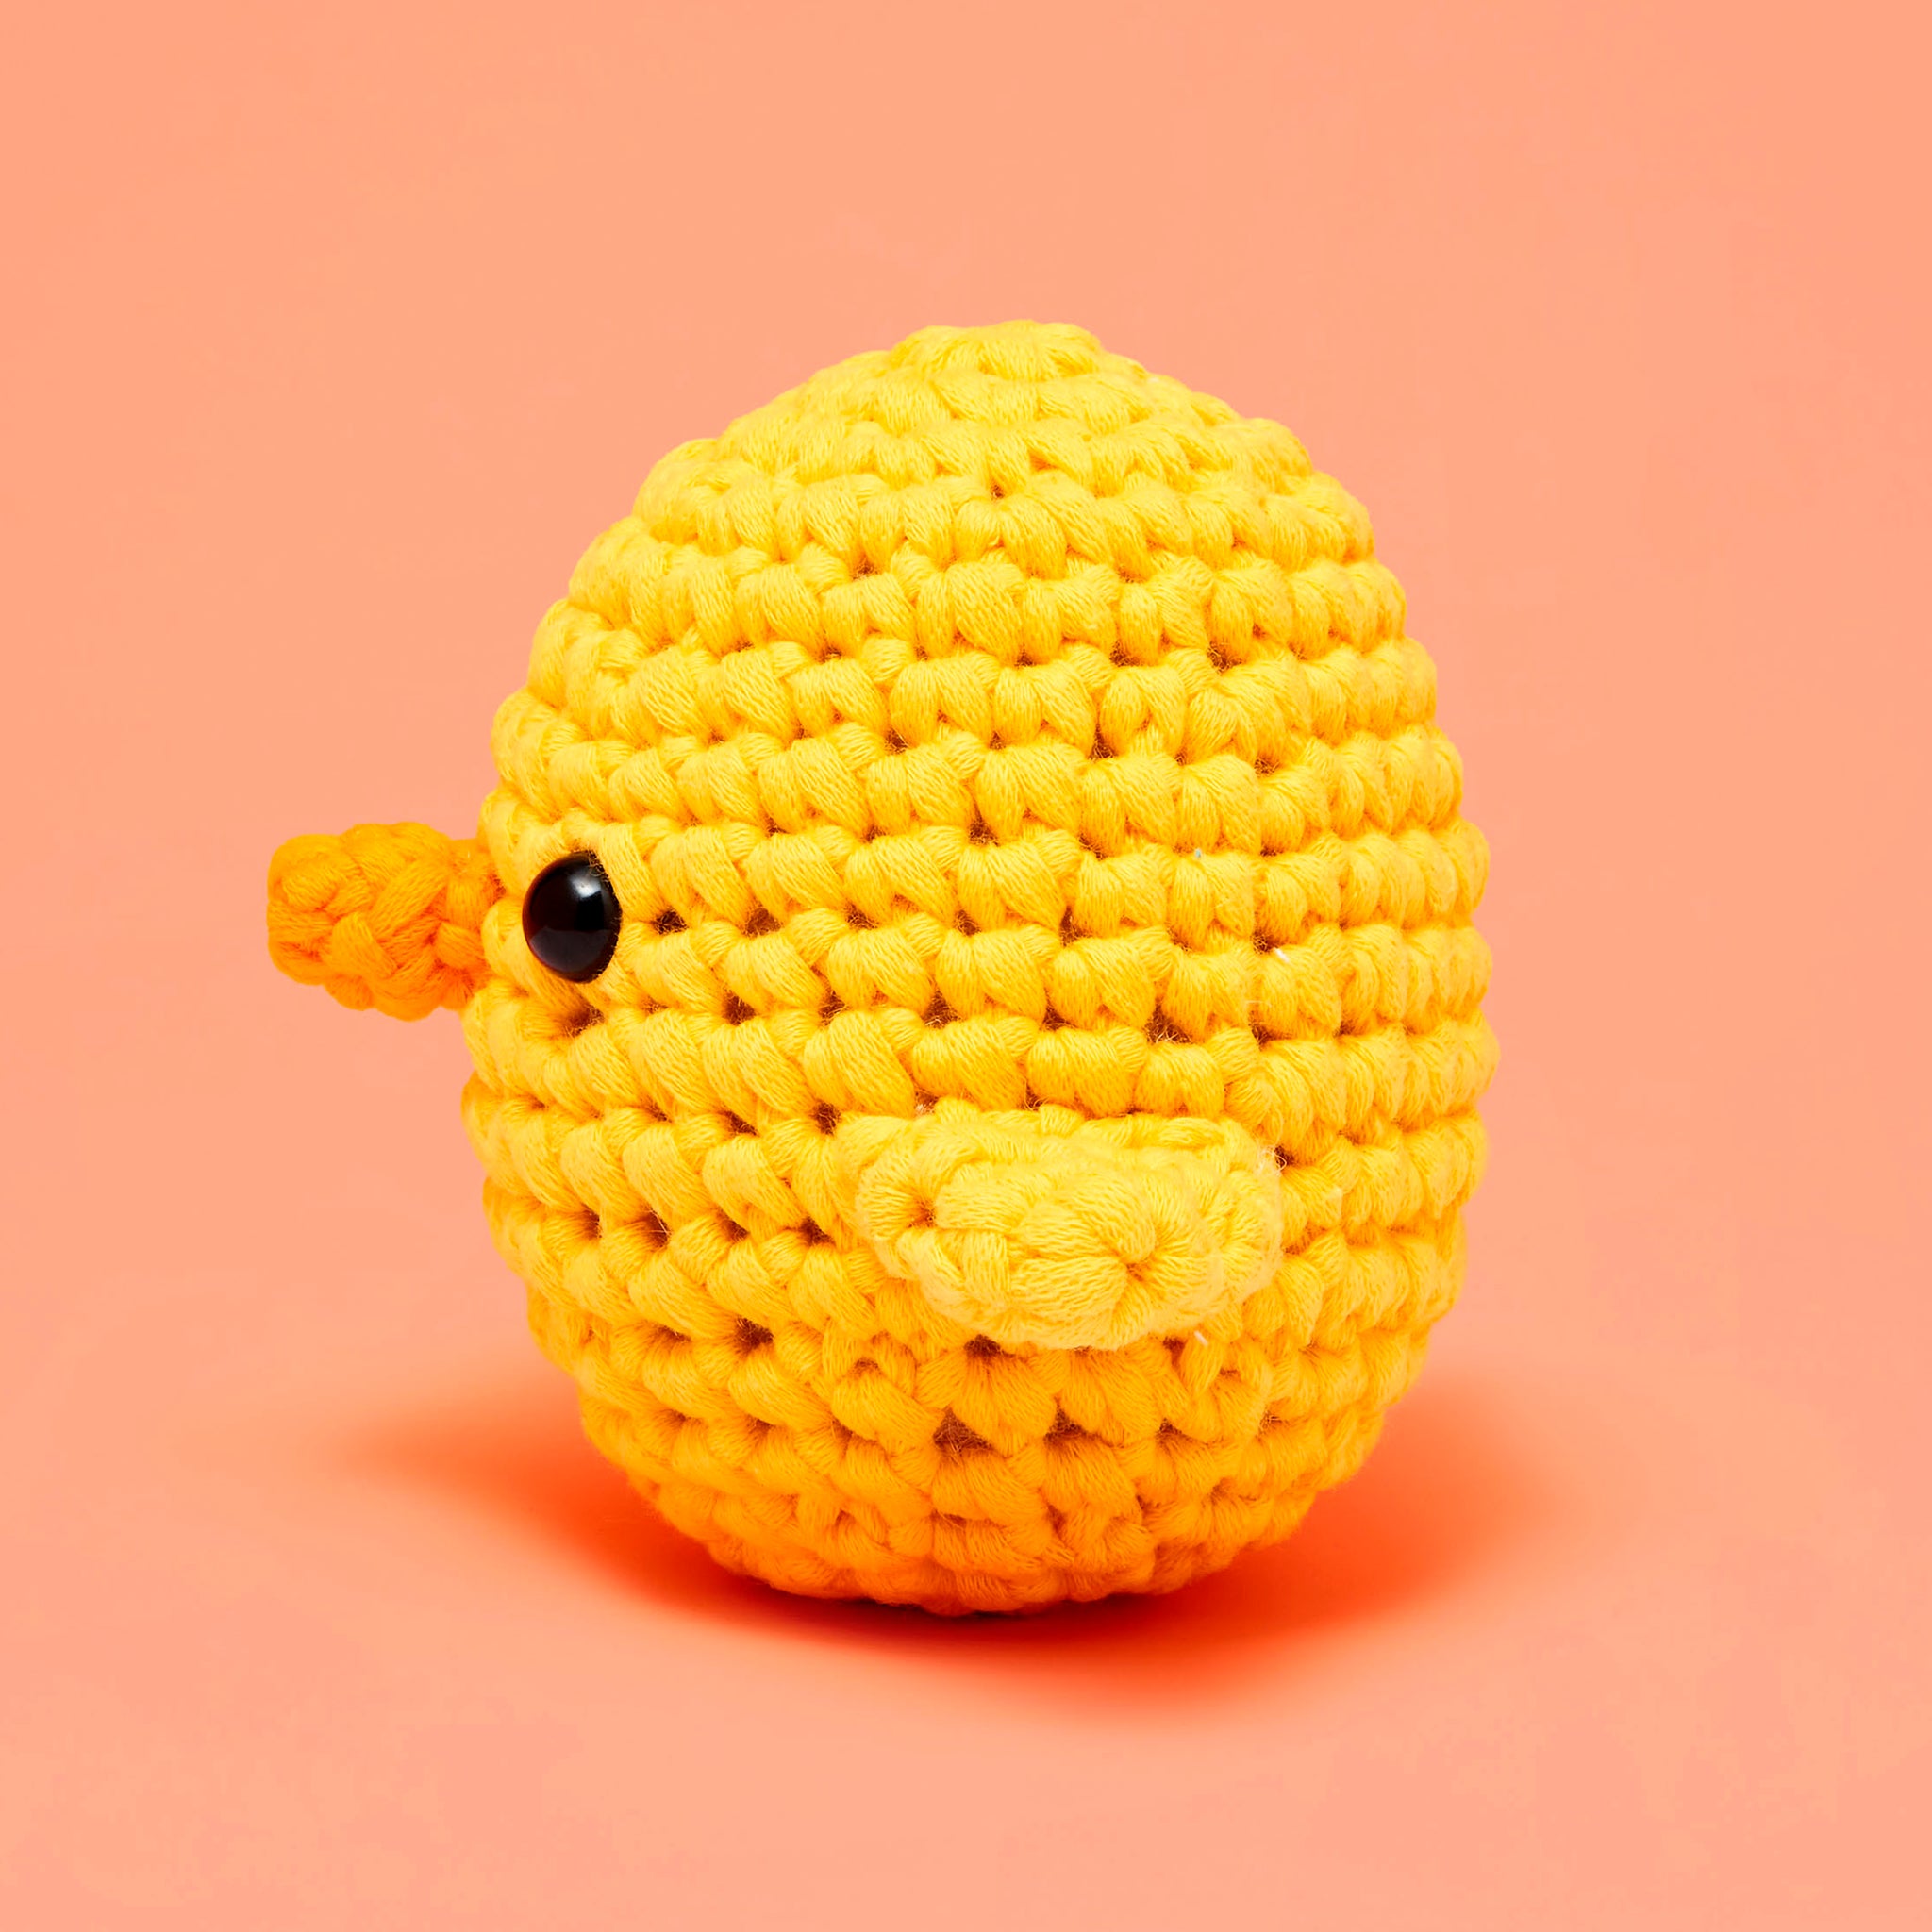 Chirpy Chick Crochet Kit for Beginners 2Pcs - Beginner Crochet